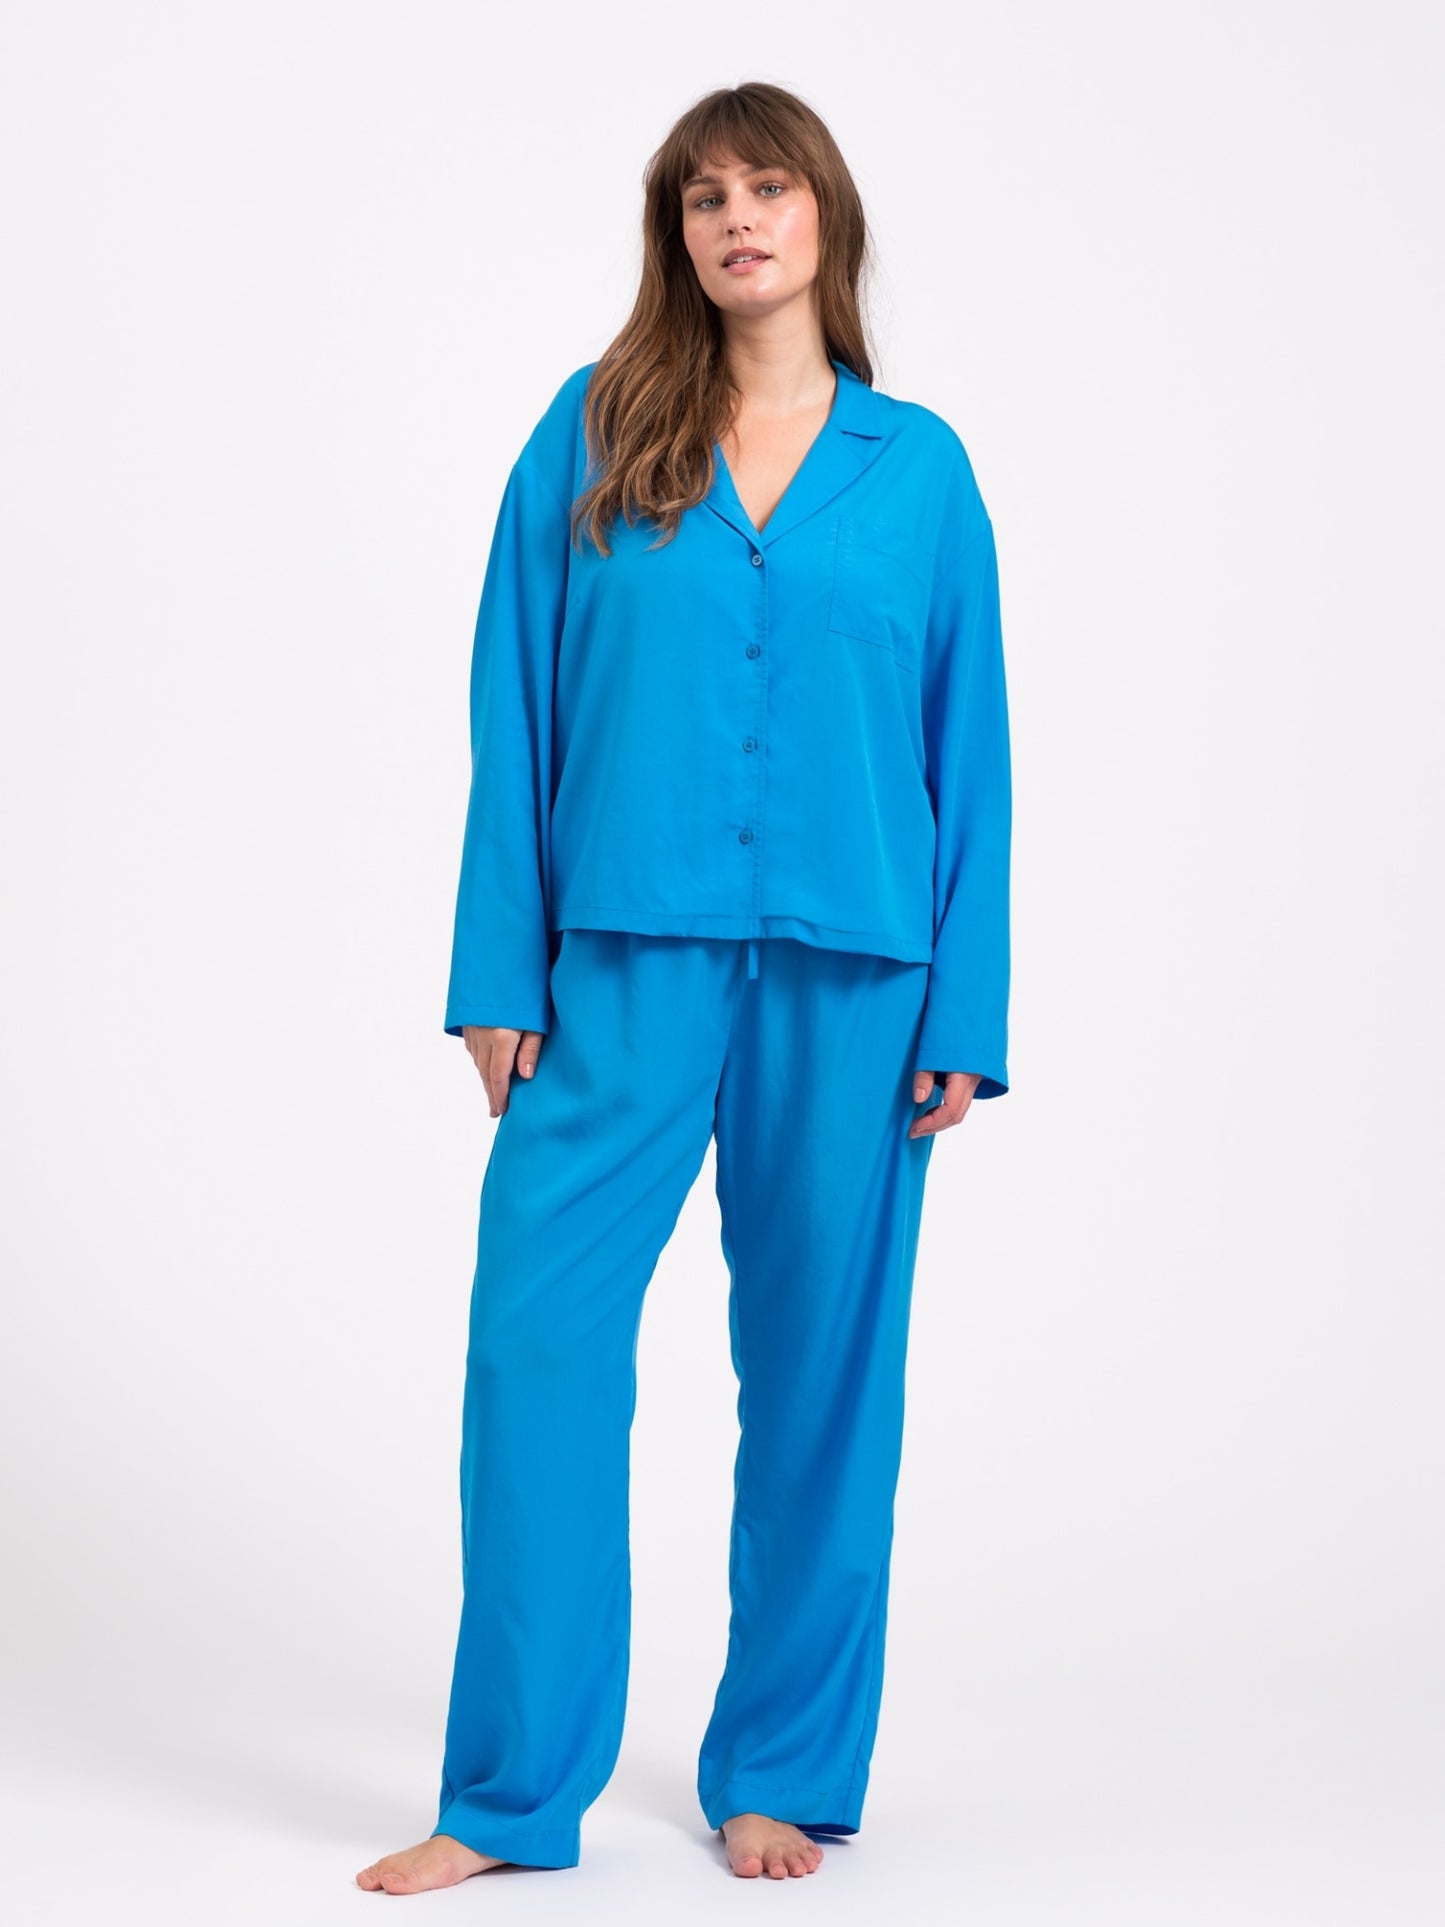 Snuggle pyjamas skjorte - Bright blue